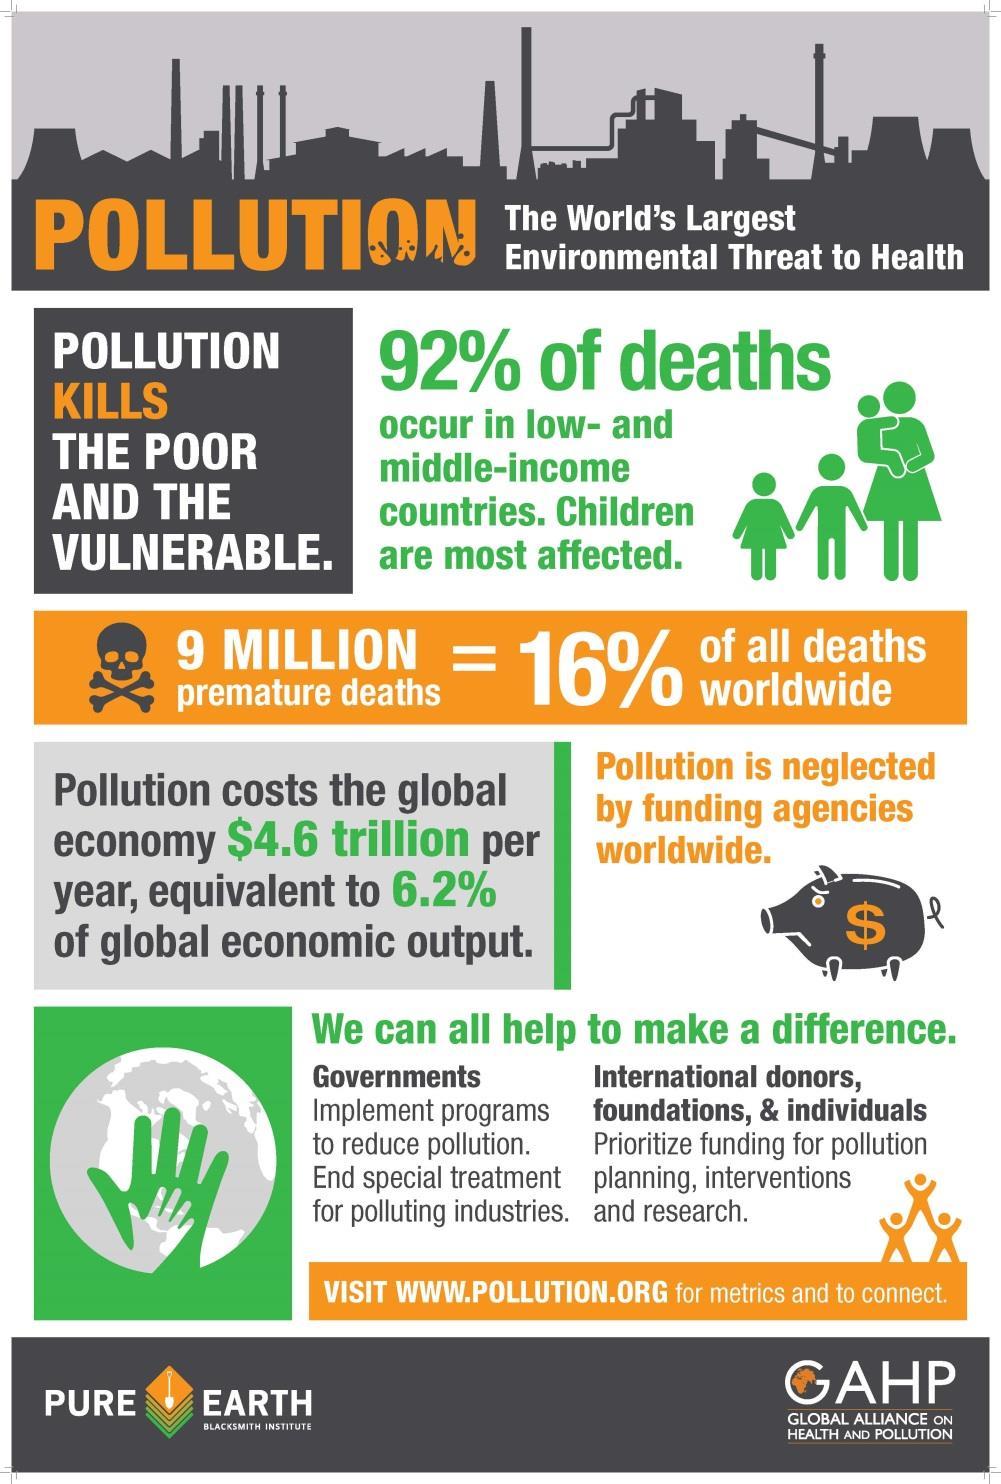 Lancet commission on pollution and health* Ympäristön saasteet suurin globaali terveysriski Yli 70% vaikutuksista ilmansaasteista, pääasiassa pienhiukkasista Suuria taloudellisia vaikutuksia